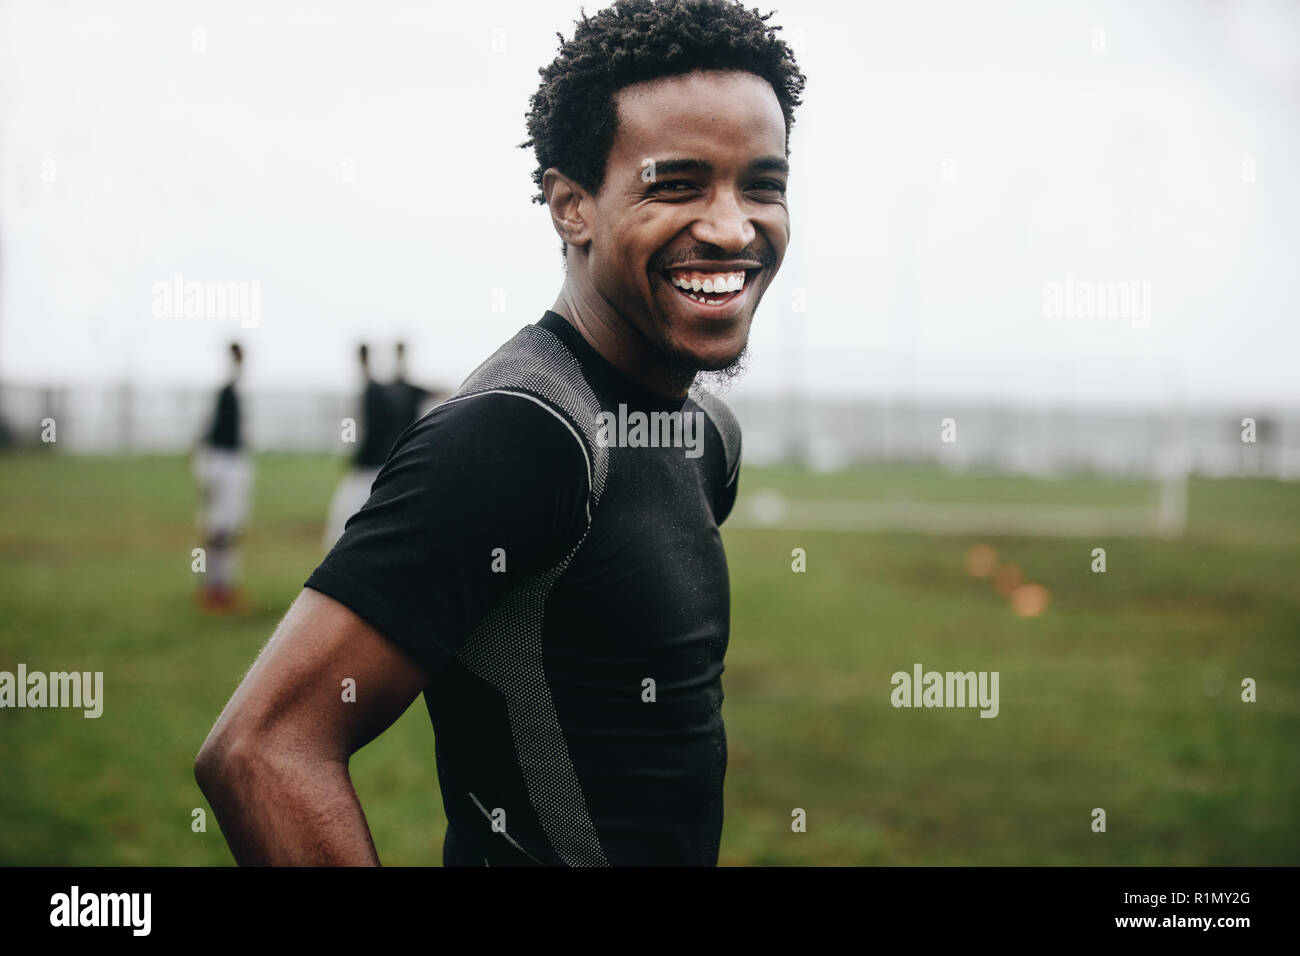 Porträt einer fröhlichen footballer stehen auf Feld während der Praxis. Seitenansicht eines afrikanischen Fußball-Spieler stehen auf Fußball Feld üben in Th Stockfoto